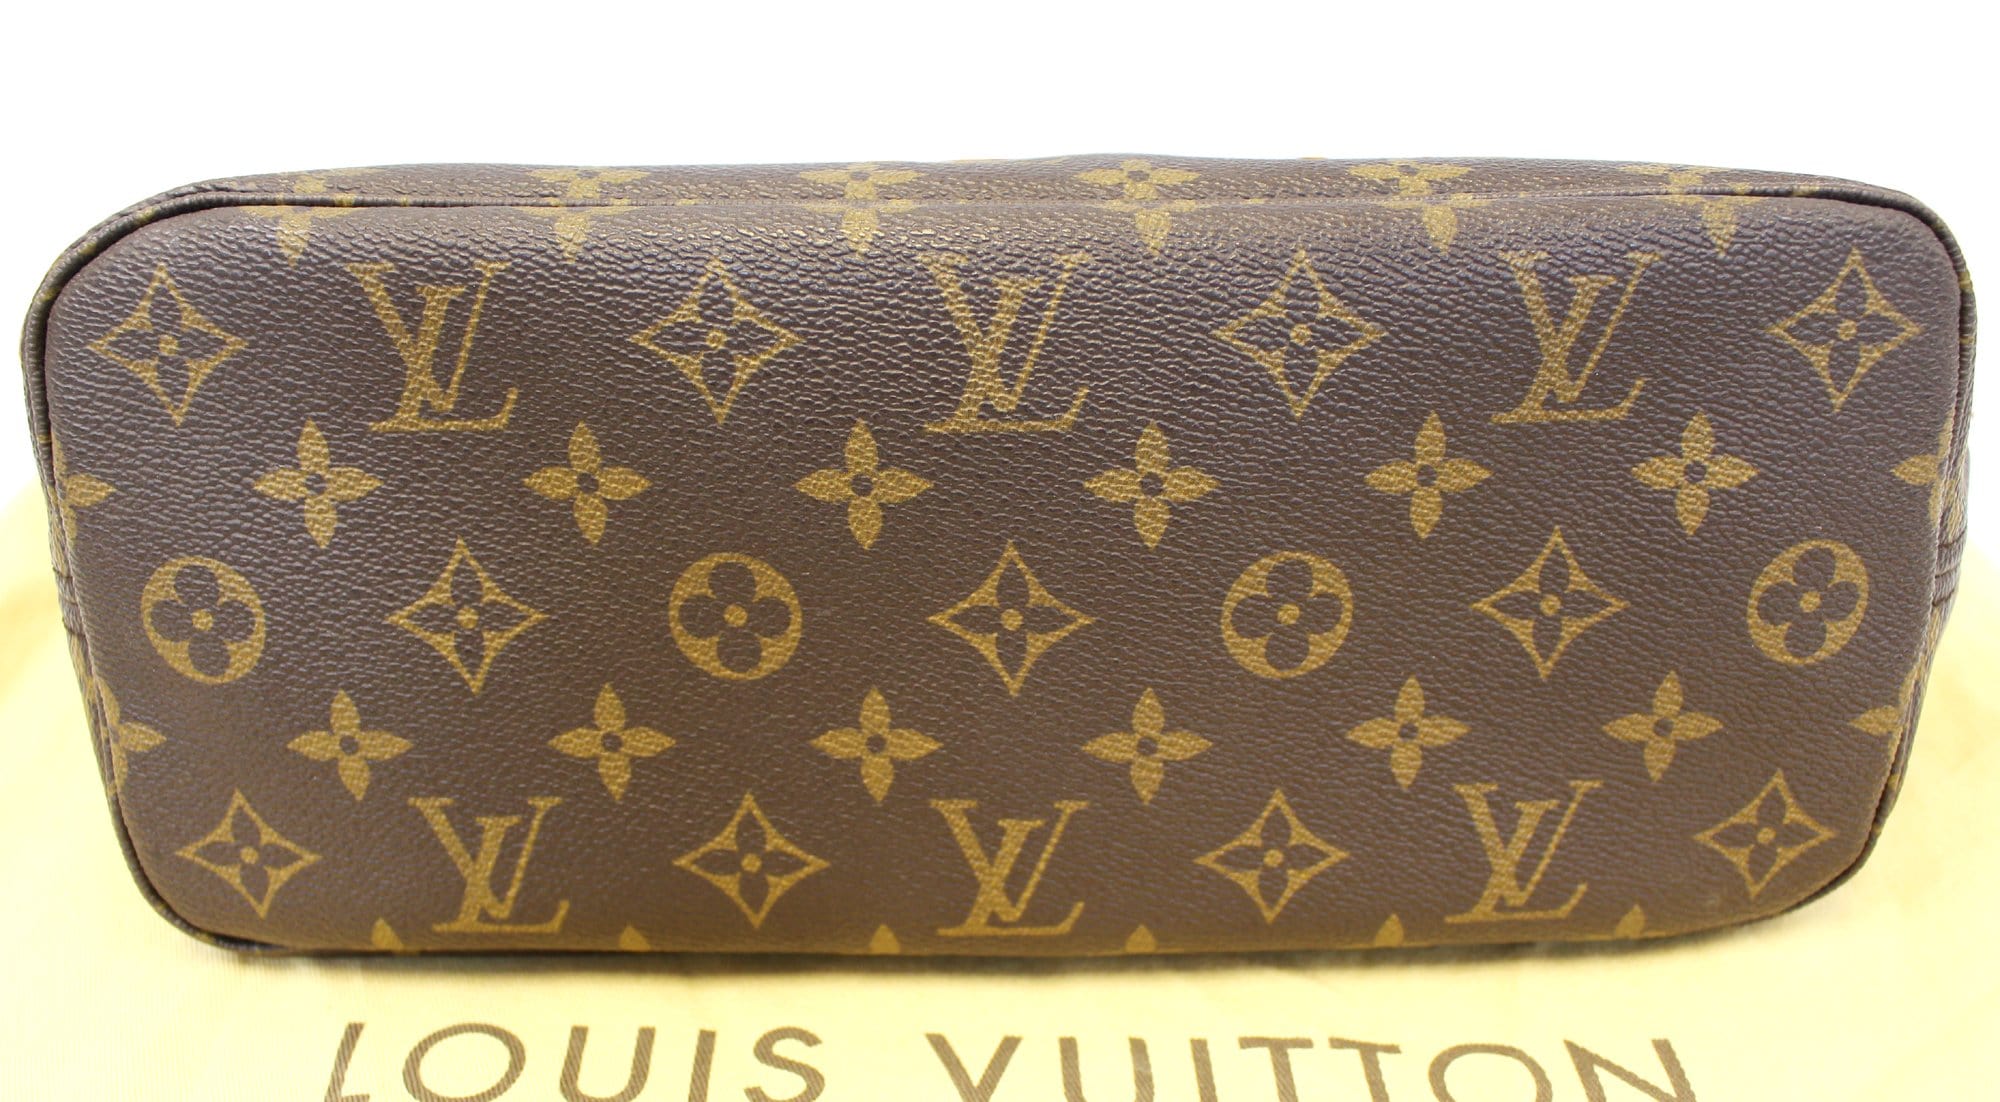 Authenticated Used Louis Vuitton M45848 Sack Pla PM Monogram Tote Bag Canvas  Women's LOUIS VUITTON 